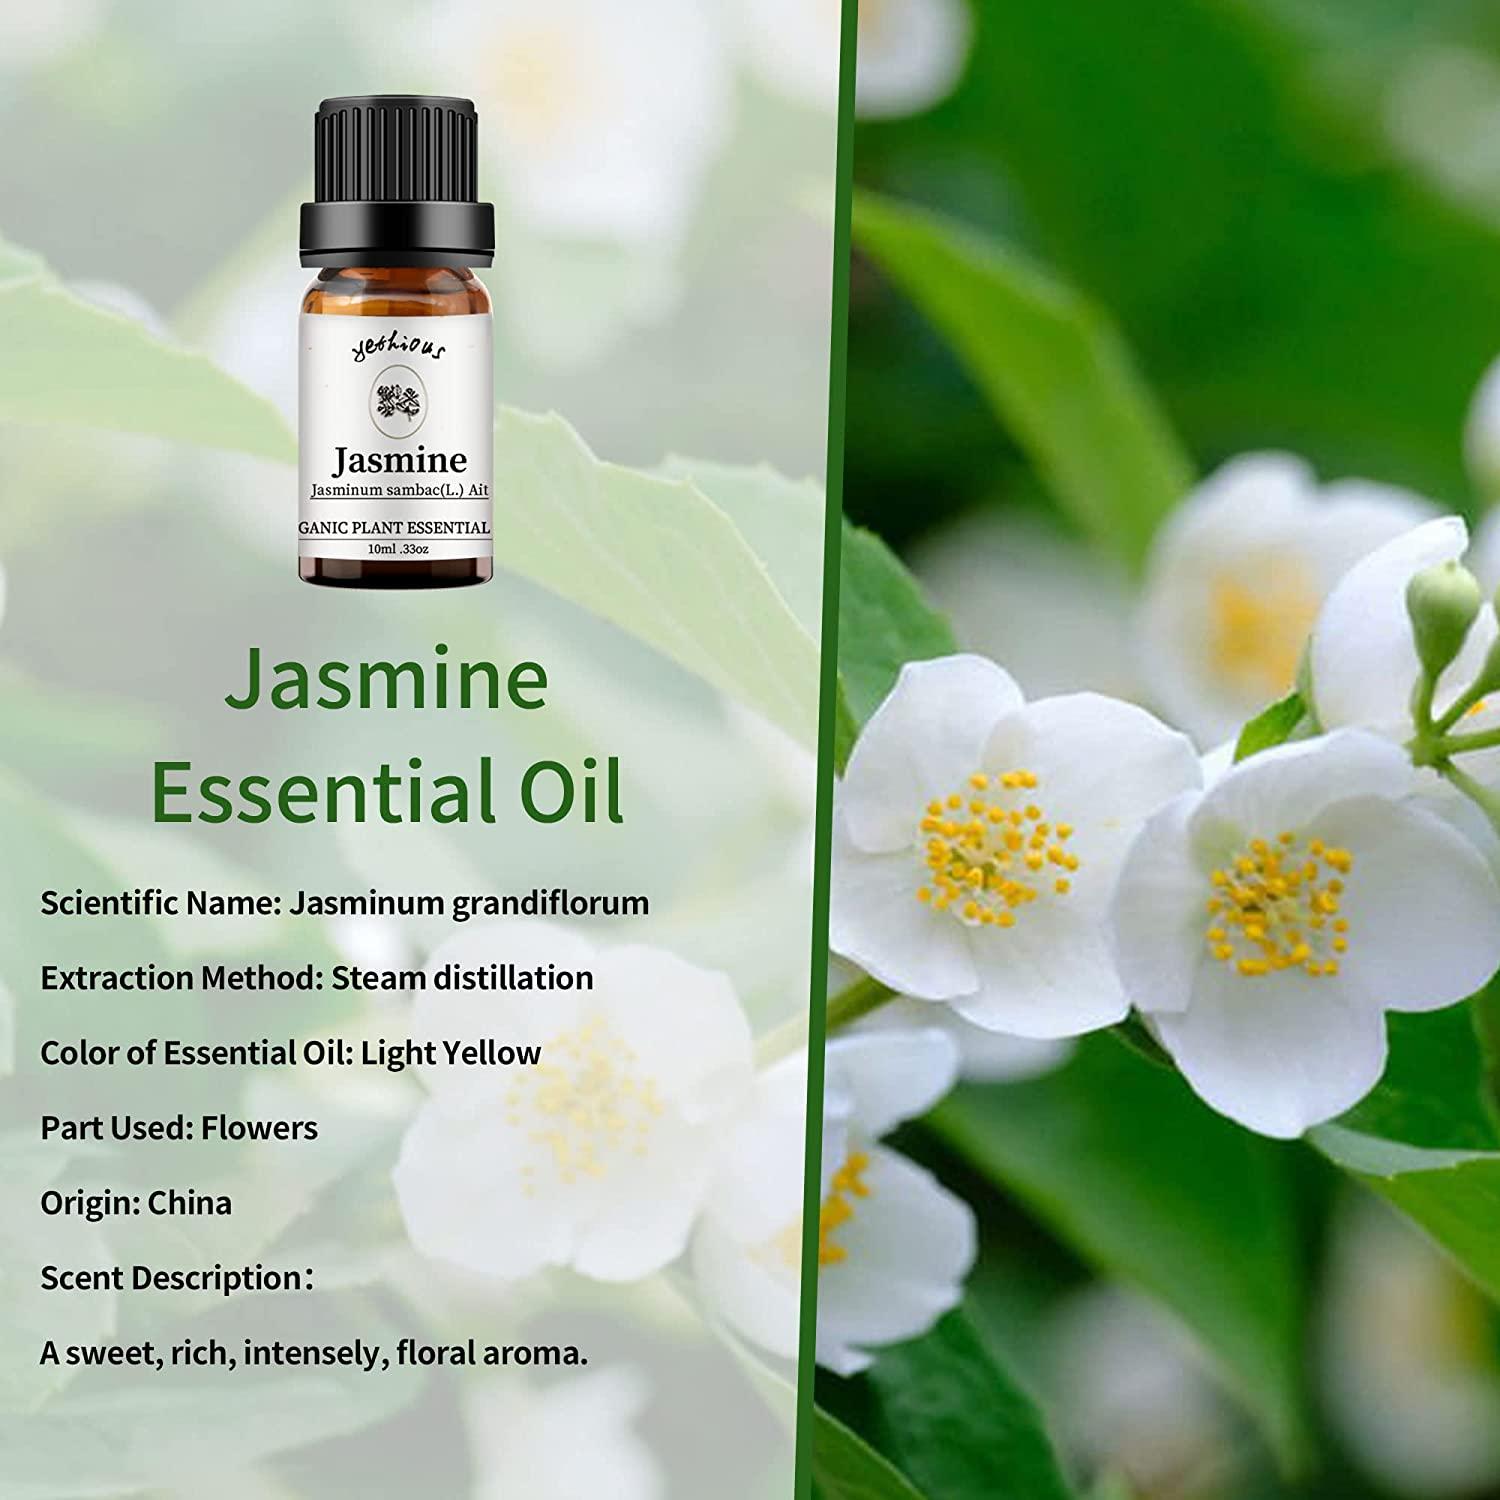 Amazing Benefits of Jasmine Essential Oils - Kusharomaexports